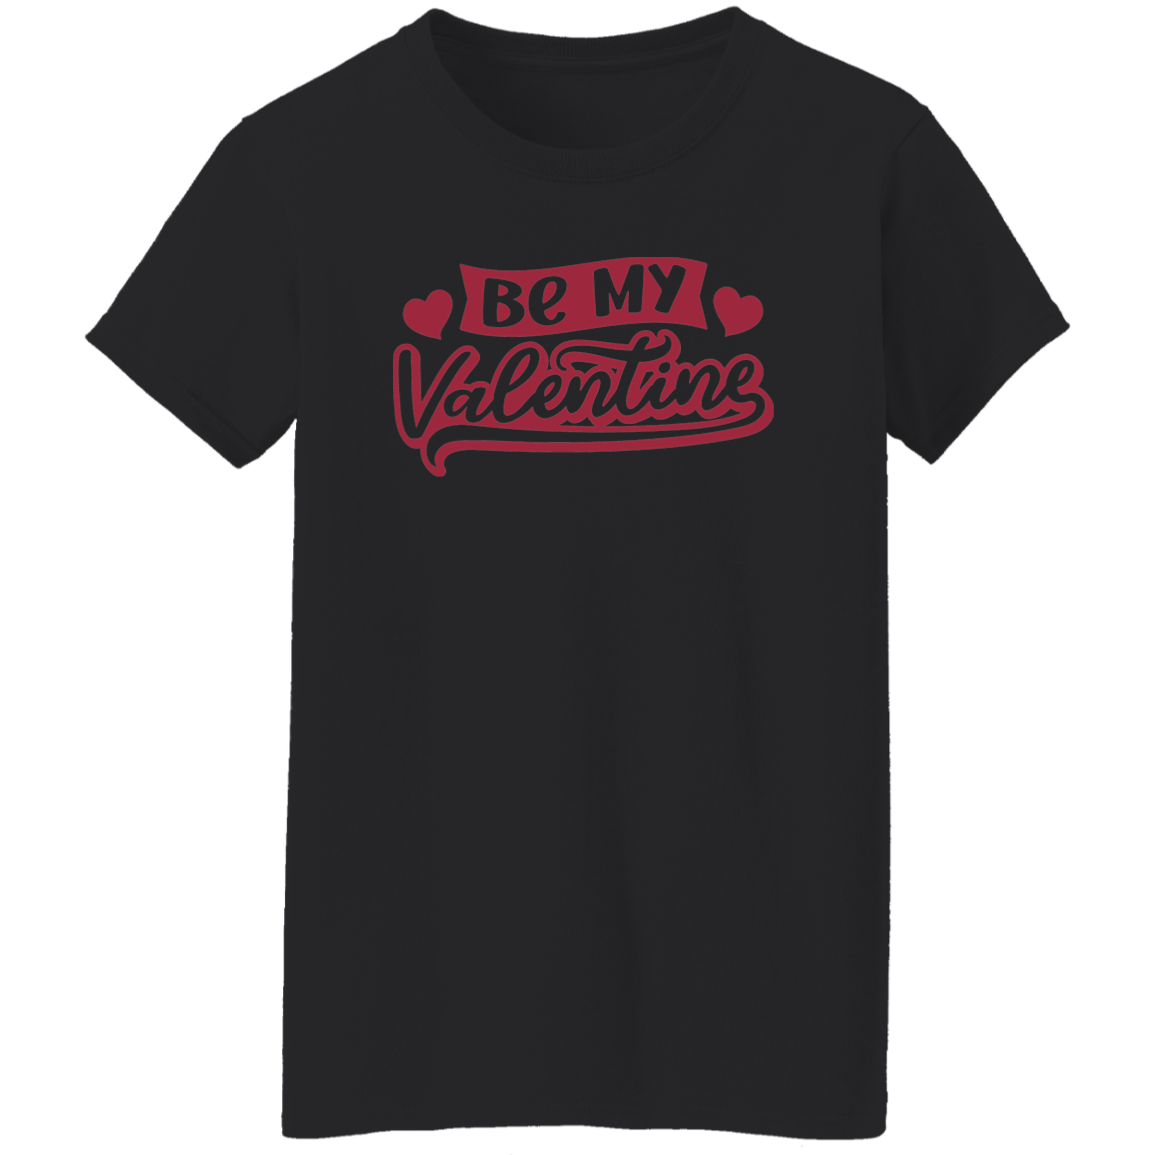 Valentine Ladies' 5.3 oz. T-Shirt